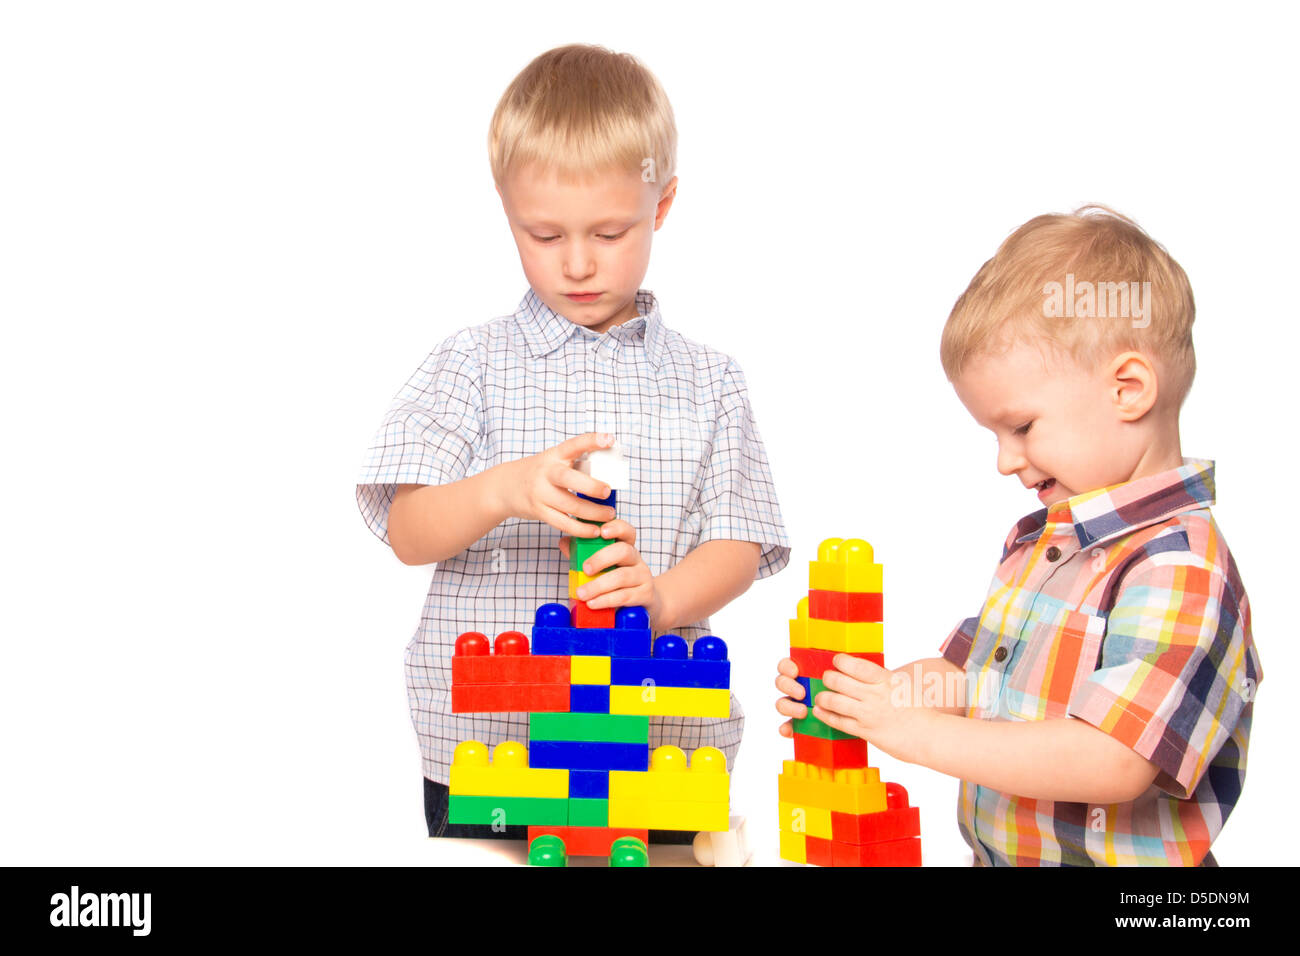 Bambini in gioco immagini e fotografie stock ad alta risoluzione - Alamy